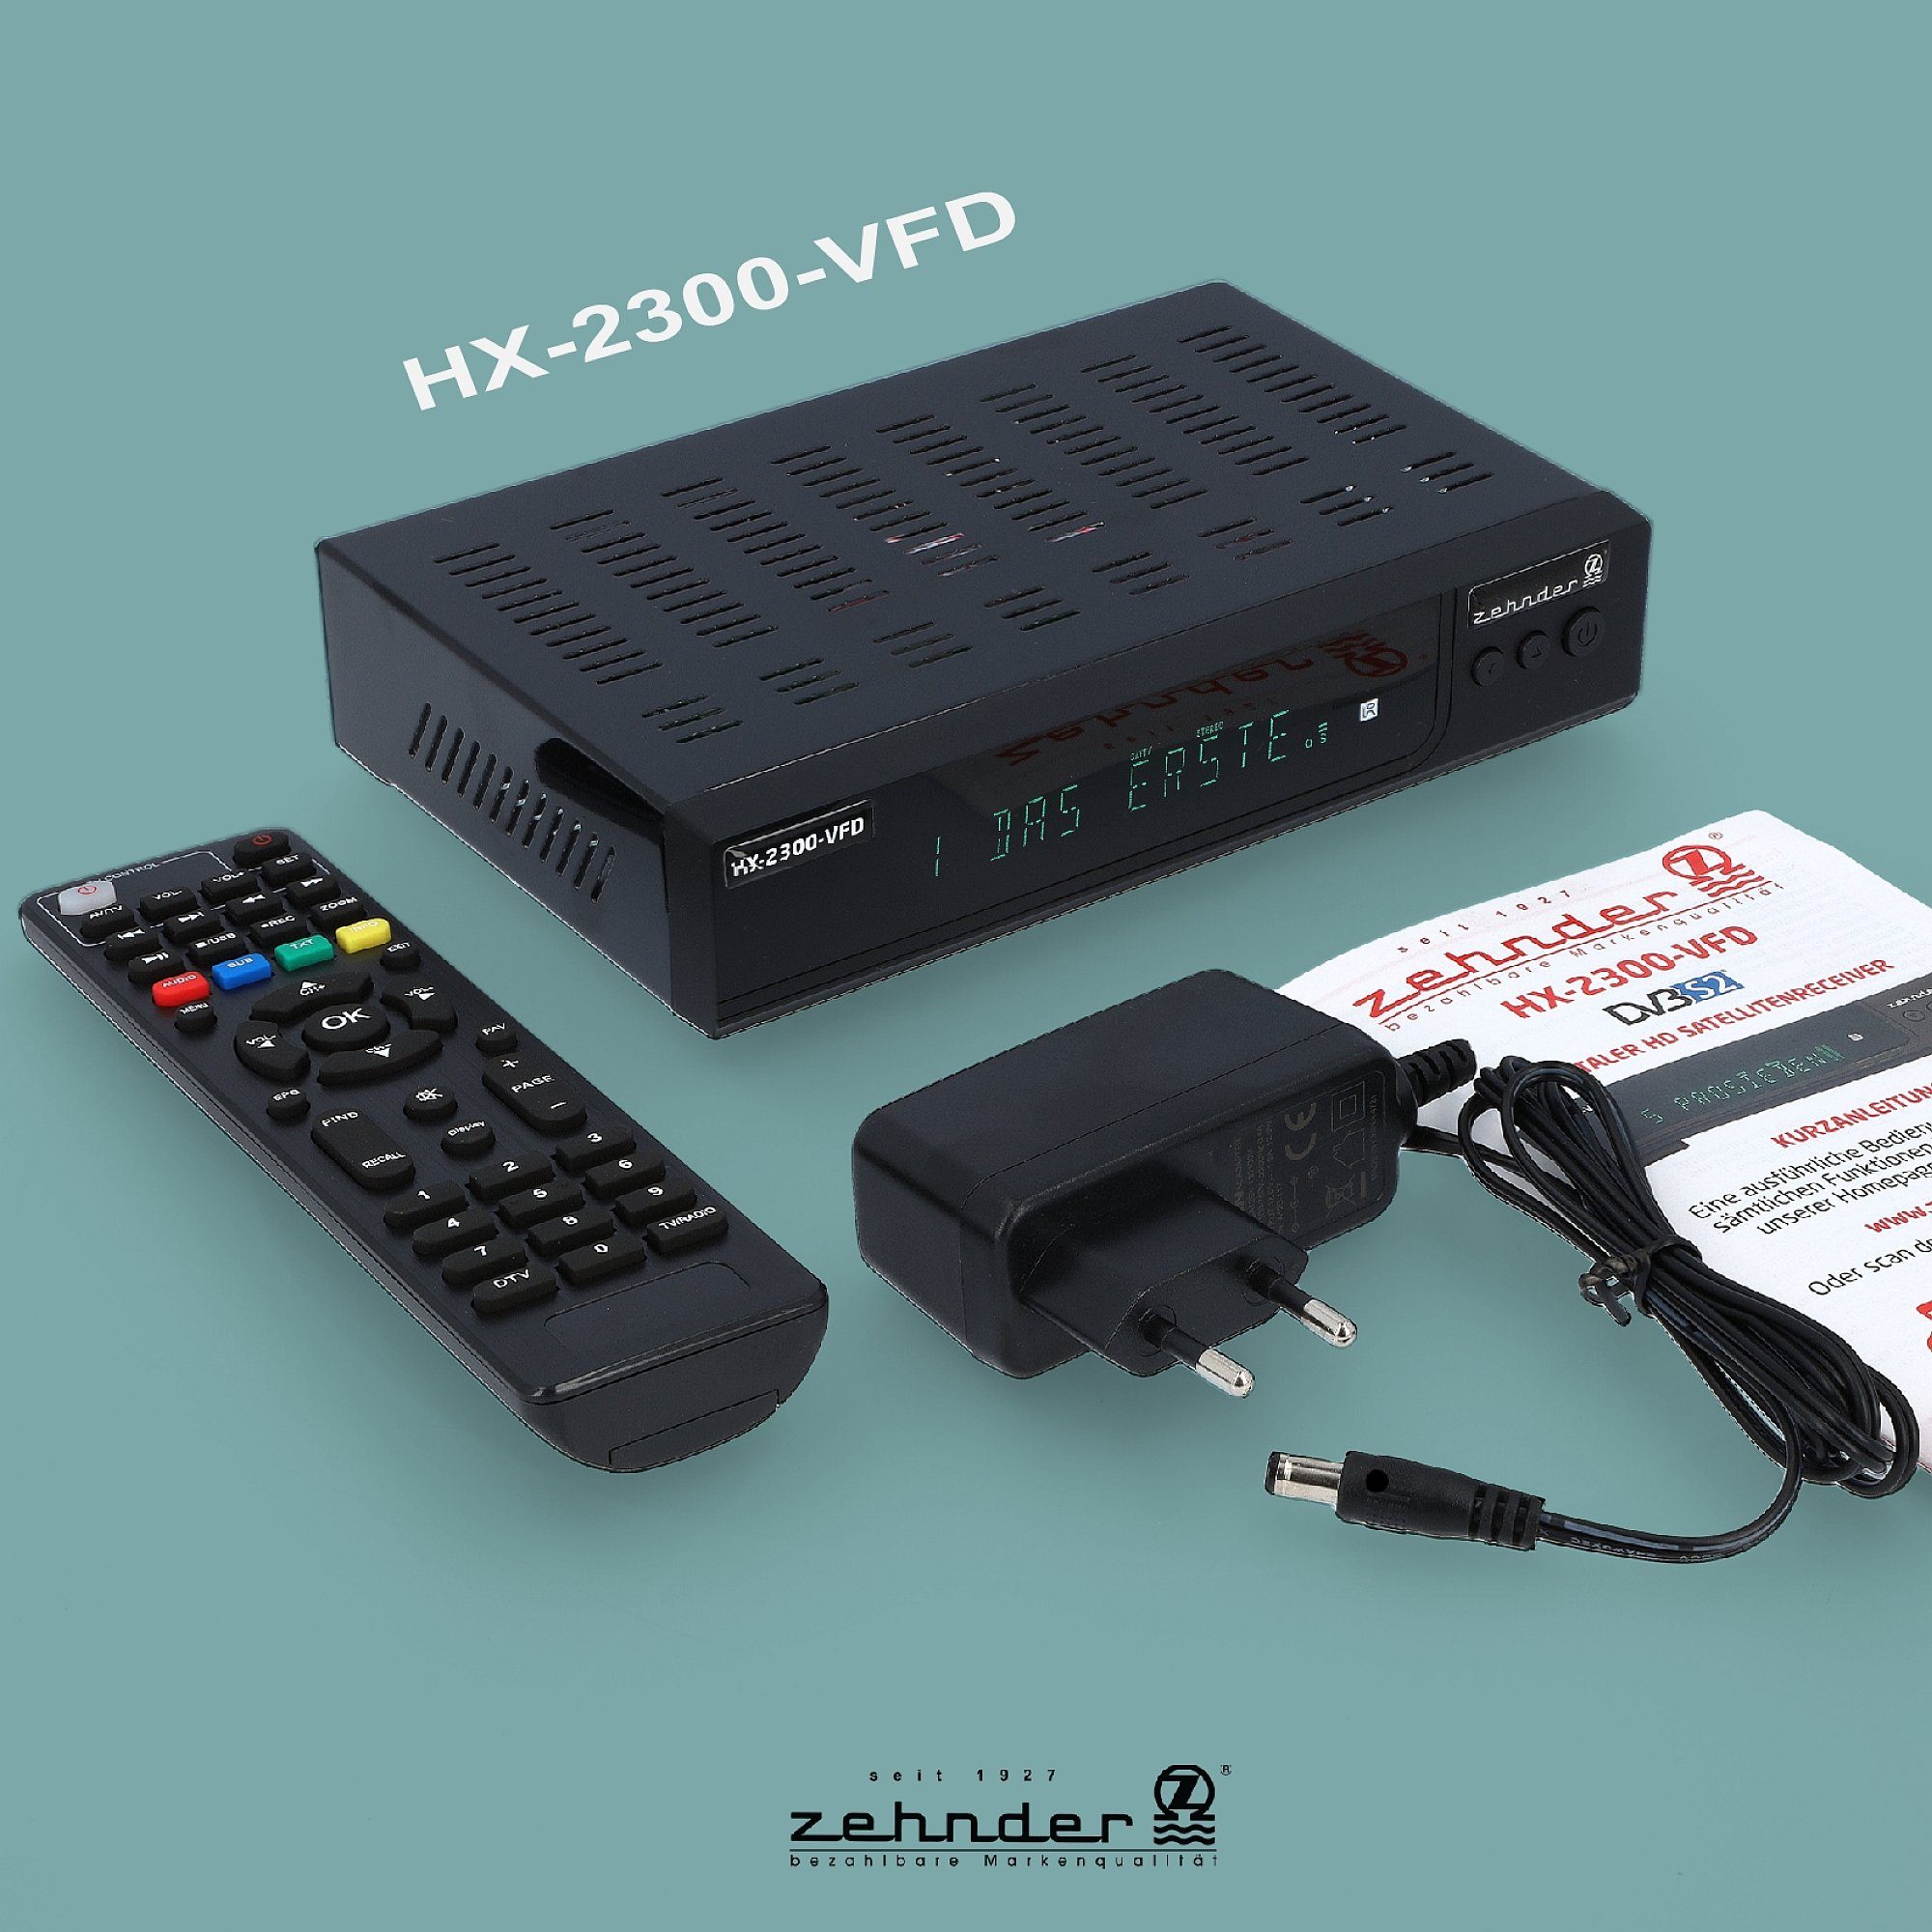 12V PVR, SAT-Receiver Einkabel SCART, Coaxial, HX-2300-Alphanumerisches (AAC-LC, - Display USB, tauglich) HDMI, Zehnder